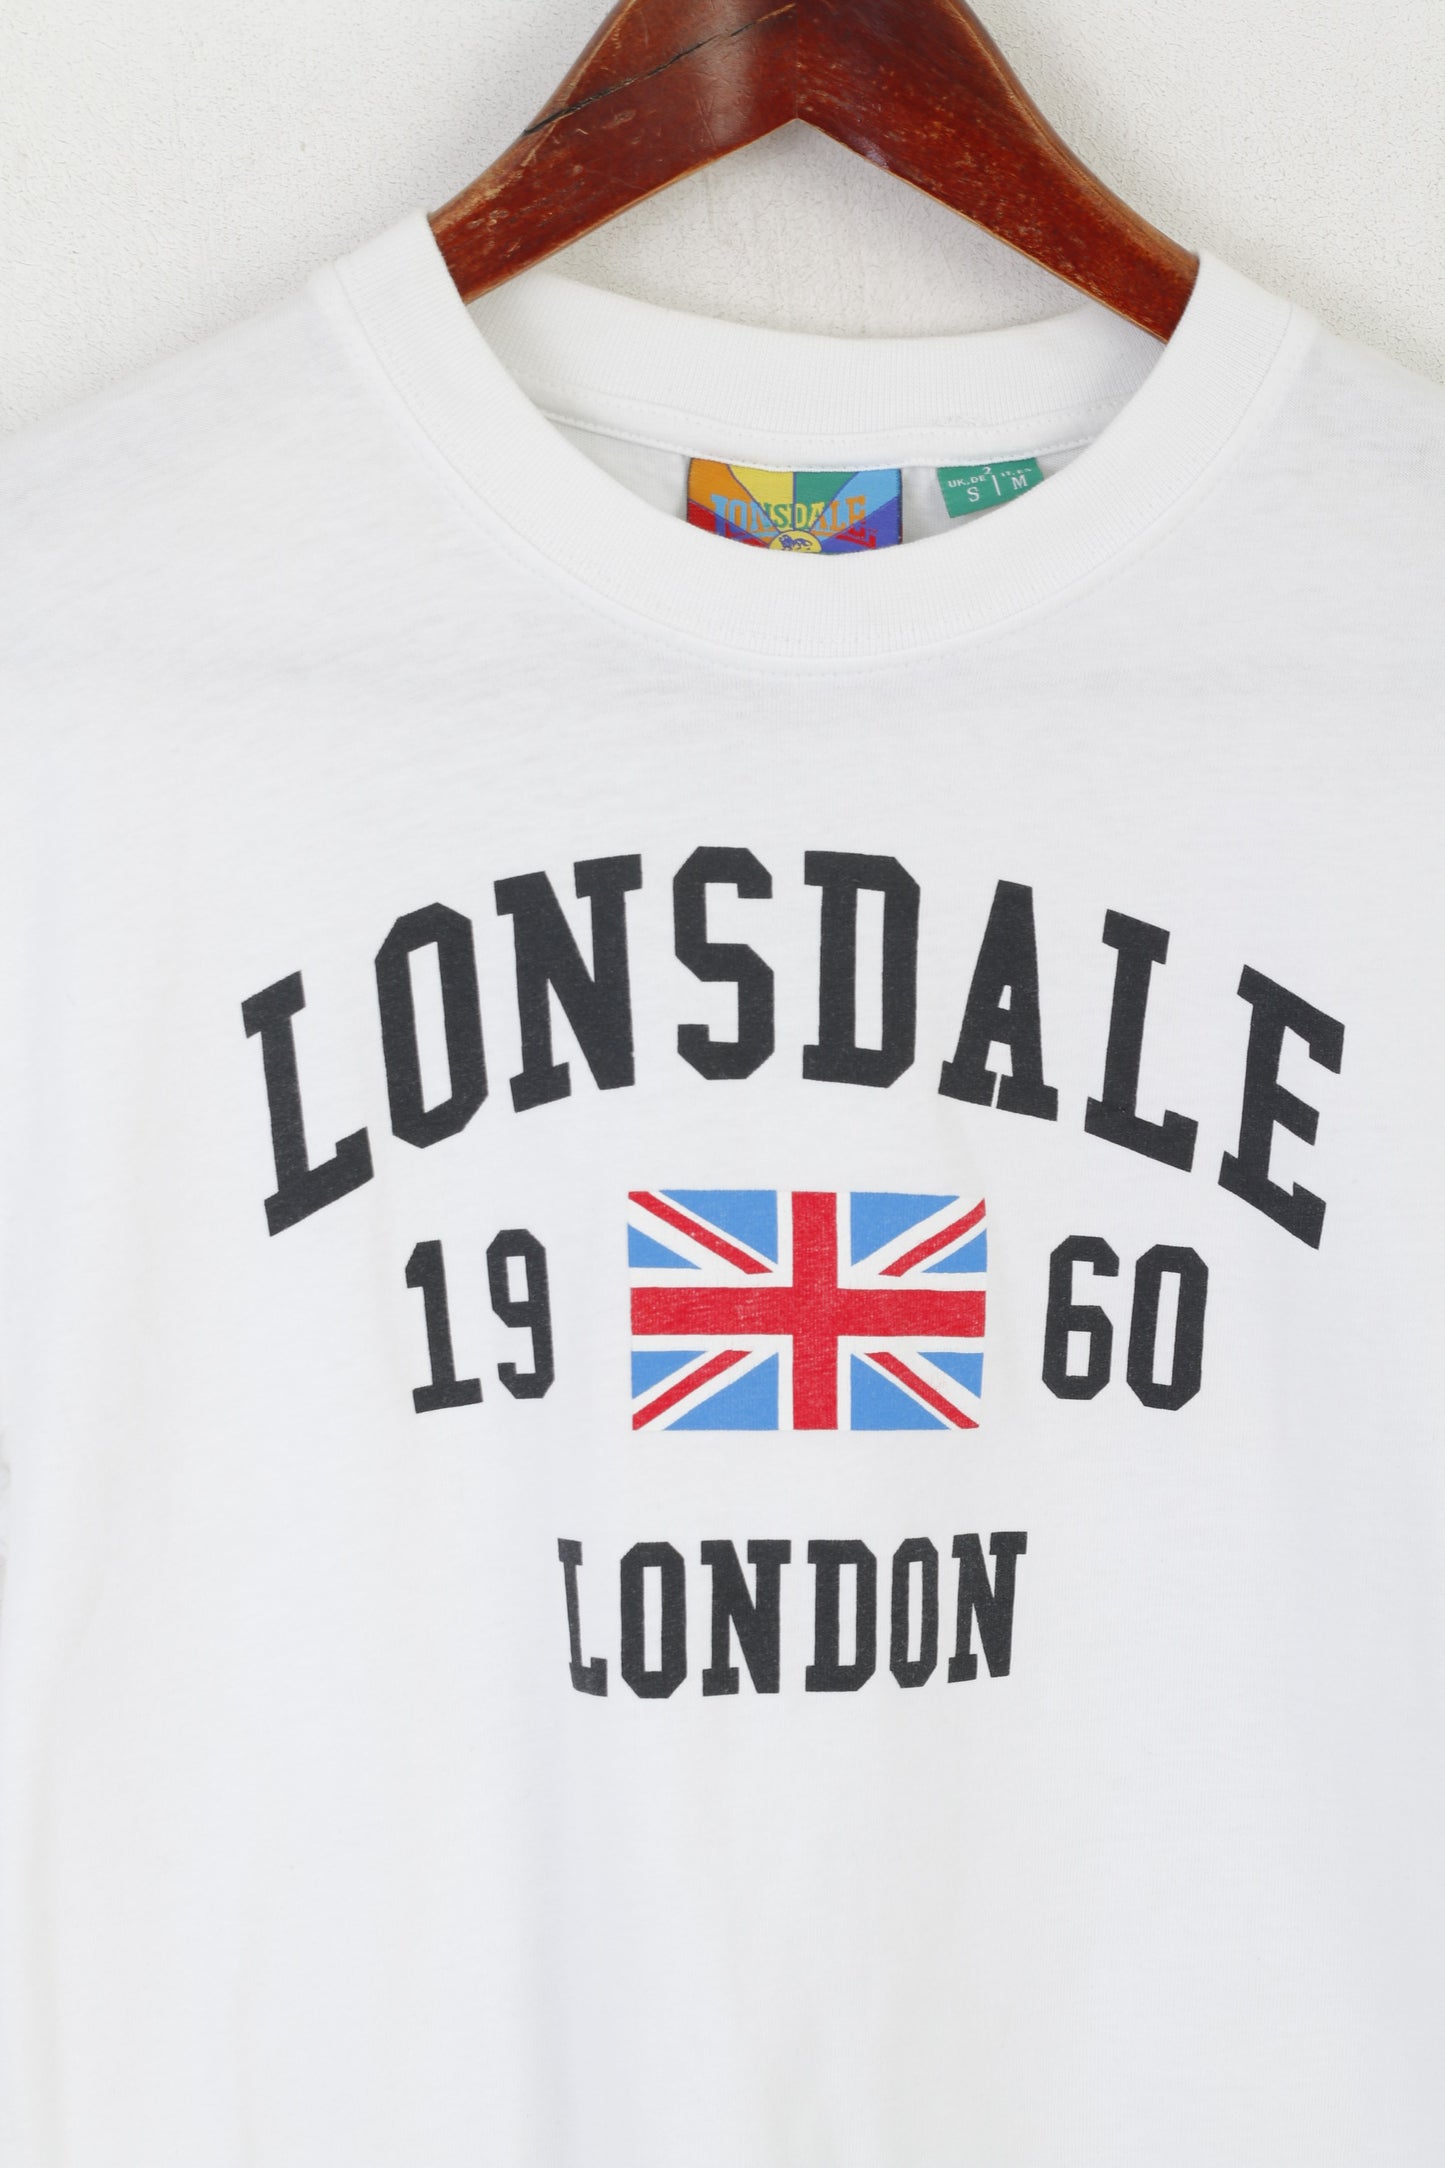 Lonsdale London Women S Shirt White Cotton Crew Neck Vintage Unisex Top